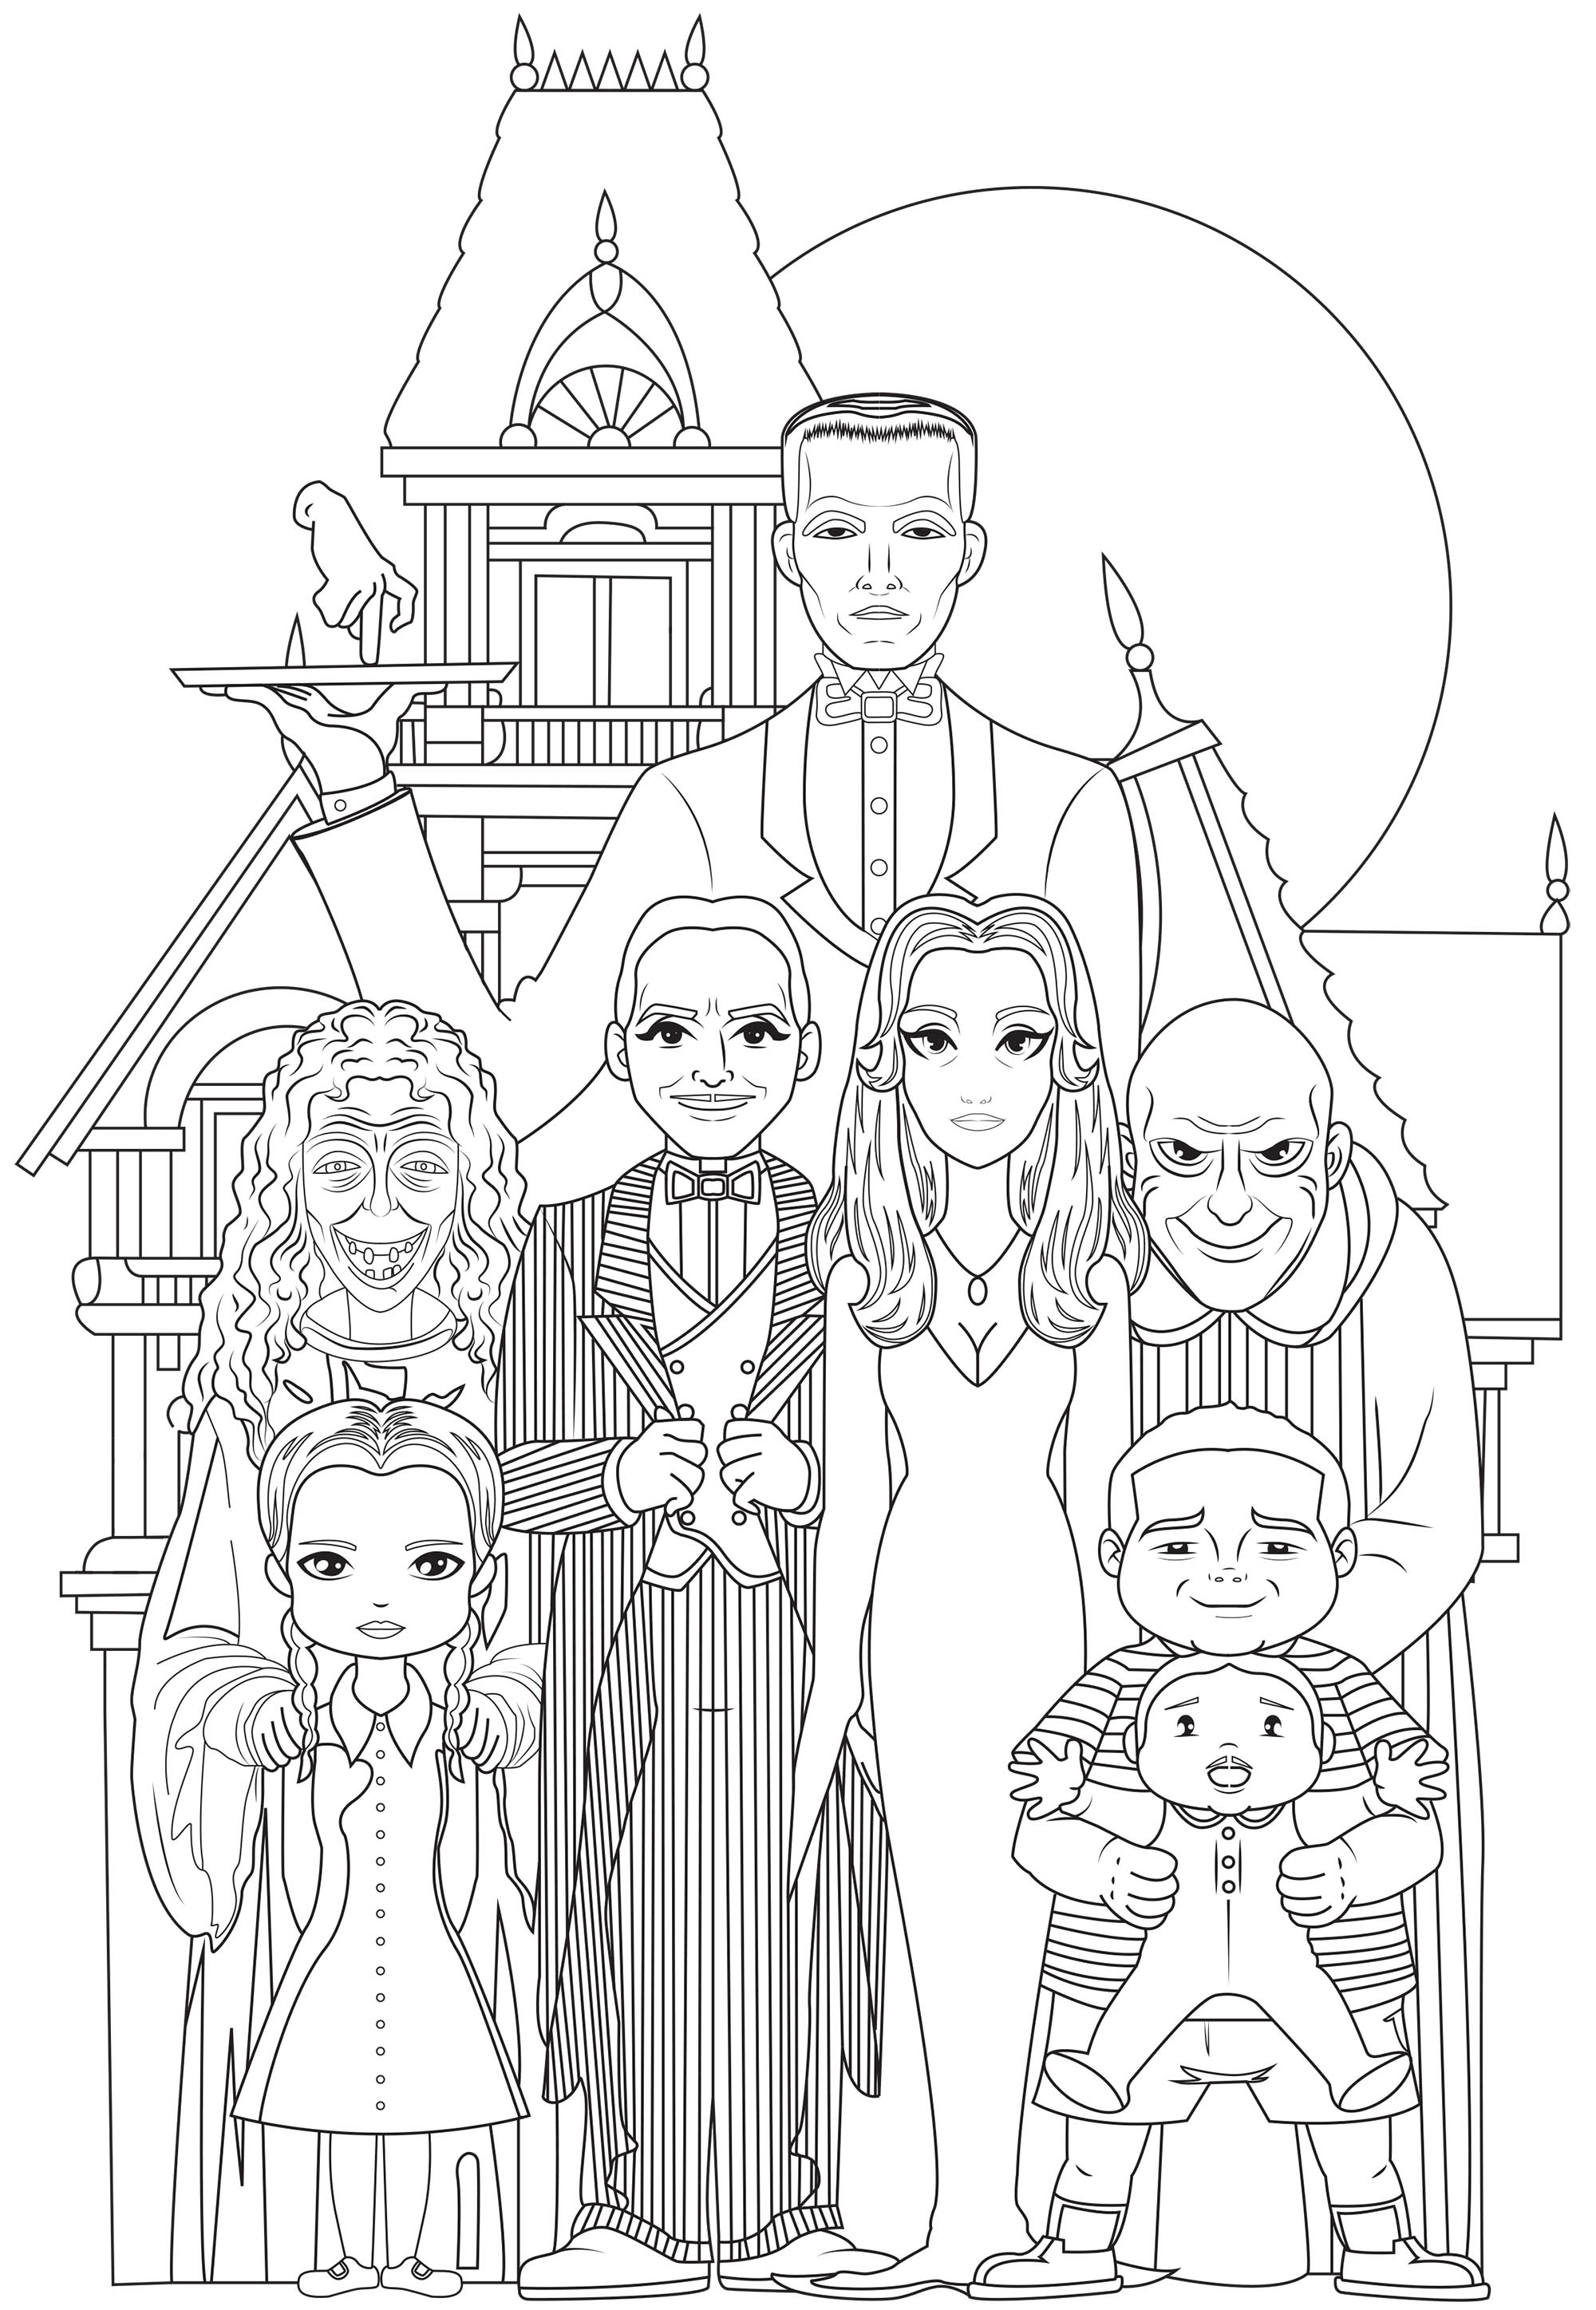 A Família Addams. Toda a família Addams: Gomez e Morticia, os seus filhos Mercredi e Pugsley, o tio Fester e a avó, o mordomo Lurch, a mão Thing e o primo Itt.